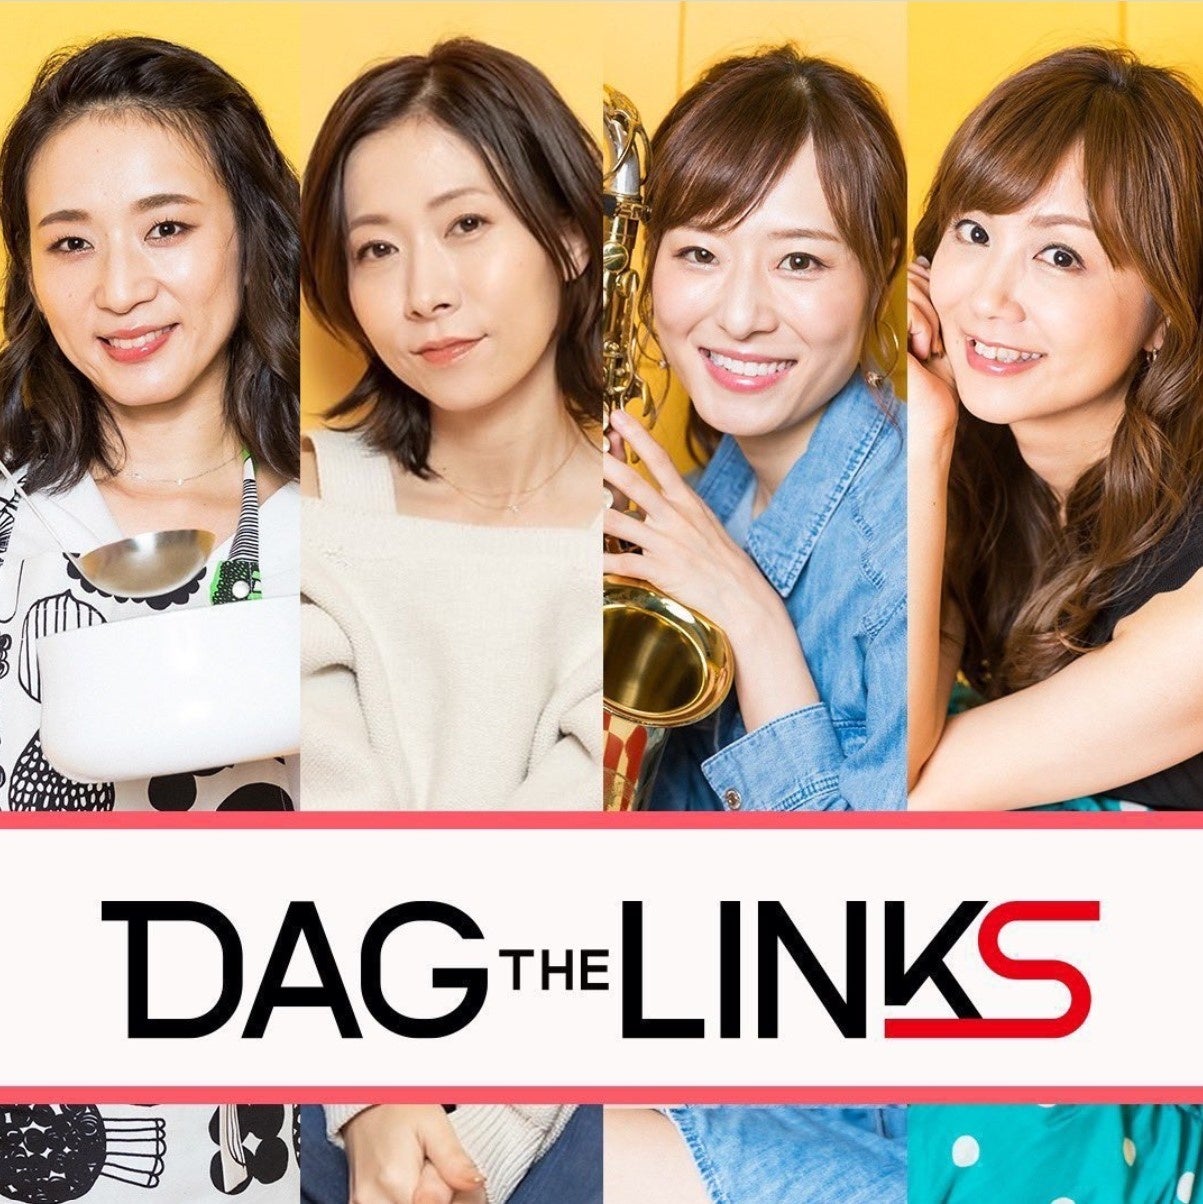 渋谷クロスFM「DAG the LINKS」(6月19日放送 ) ゲストに こりんが出演いたします。